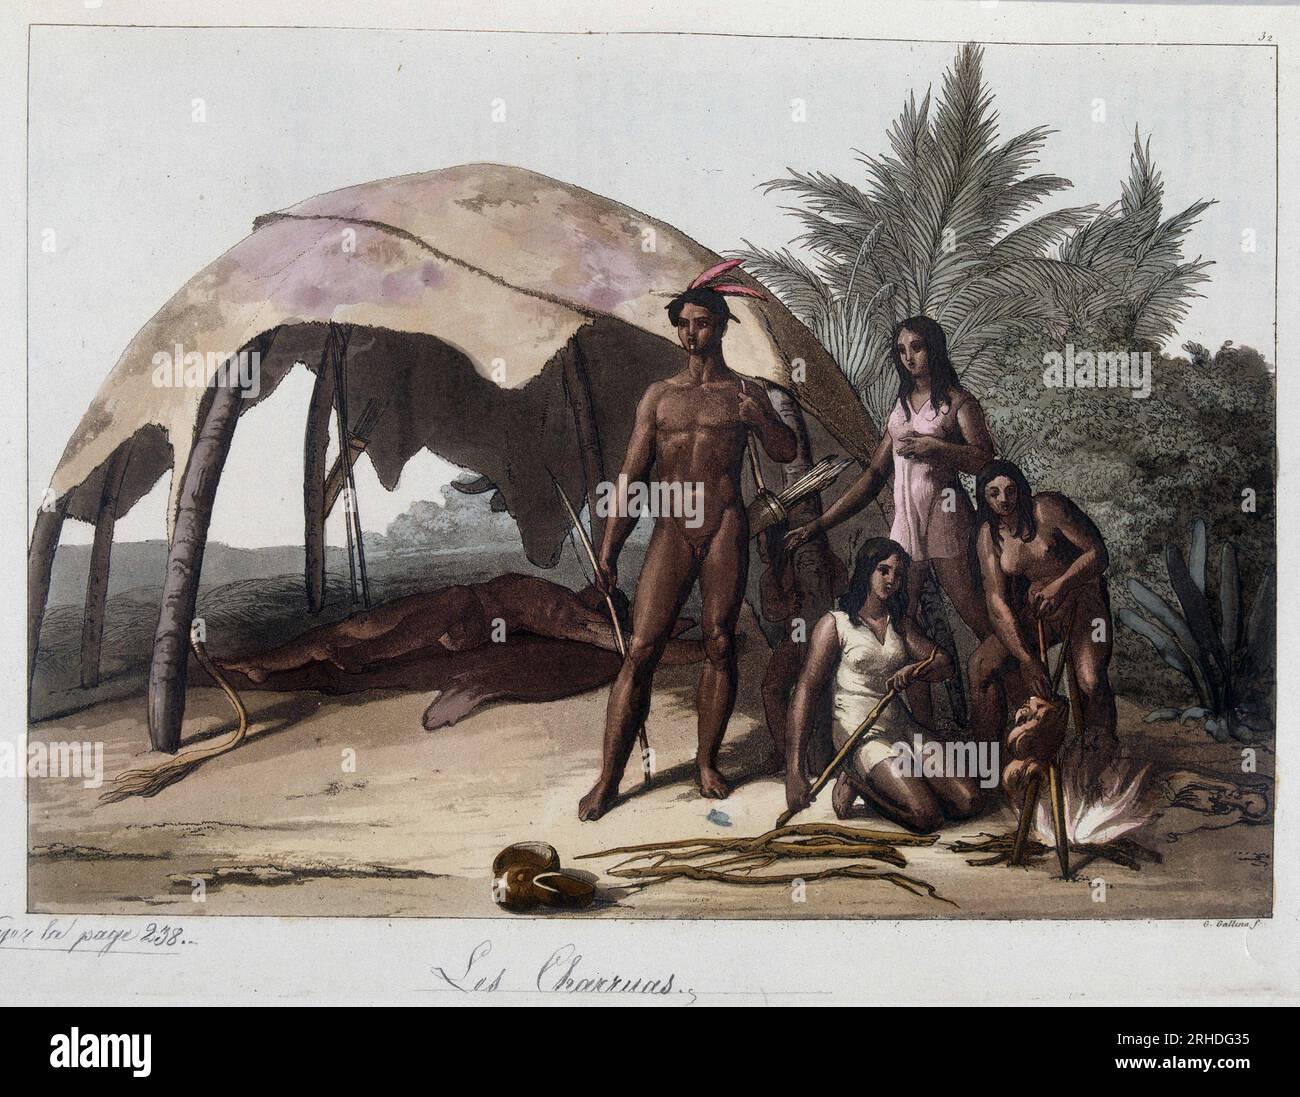 Repas chez les indiens charruas, du Paraguay. Dans 'Le Costume ancien et moderne', 1818-1820 par Ferrario. Banque D'Images